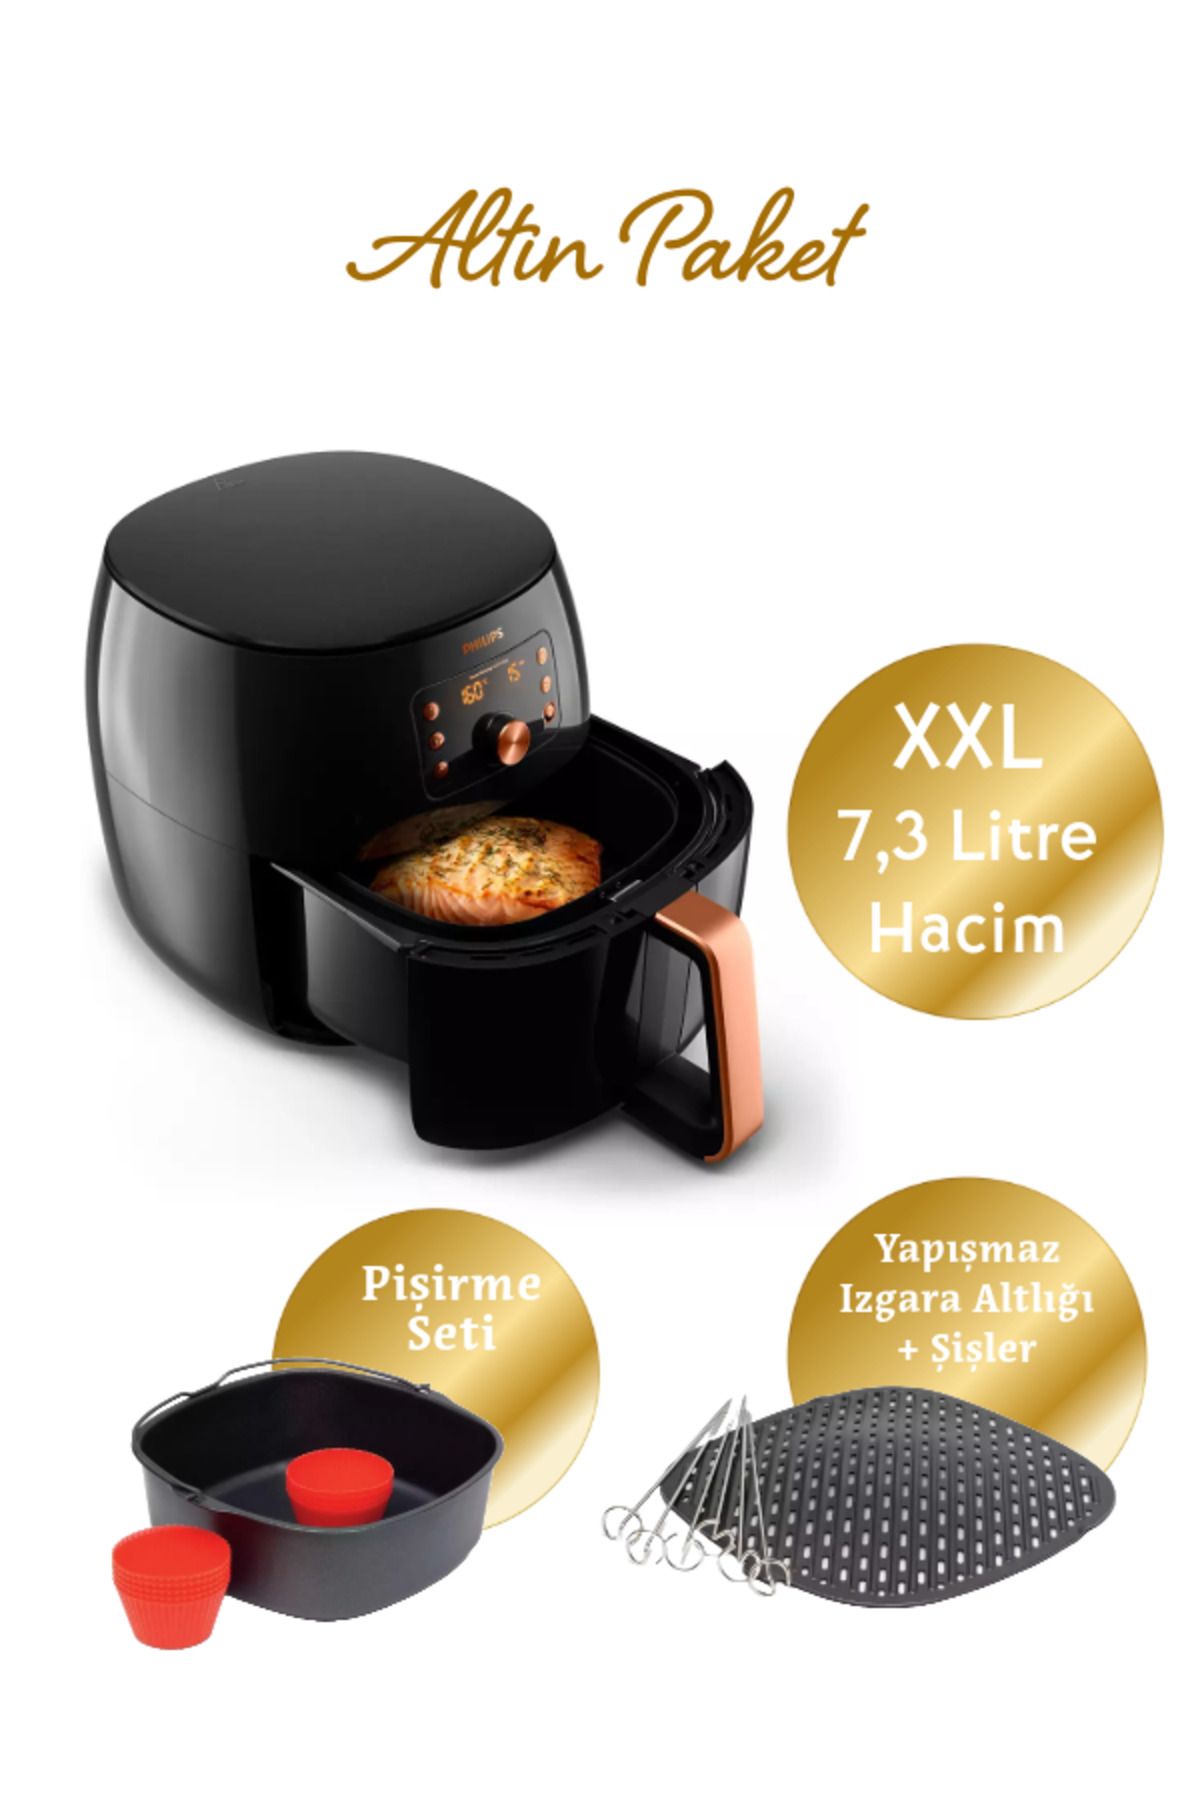 Philips XXL 7.3 lt Yağsız Fritöz, Izgara ve Pişirici Seti, Altın Paket HD9867 Luciole Lambader Hediye